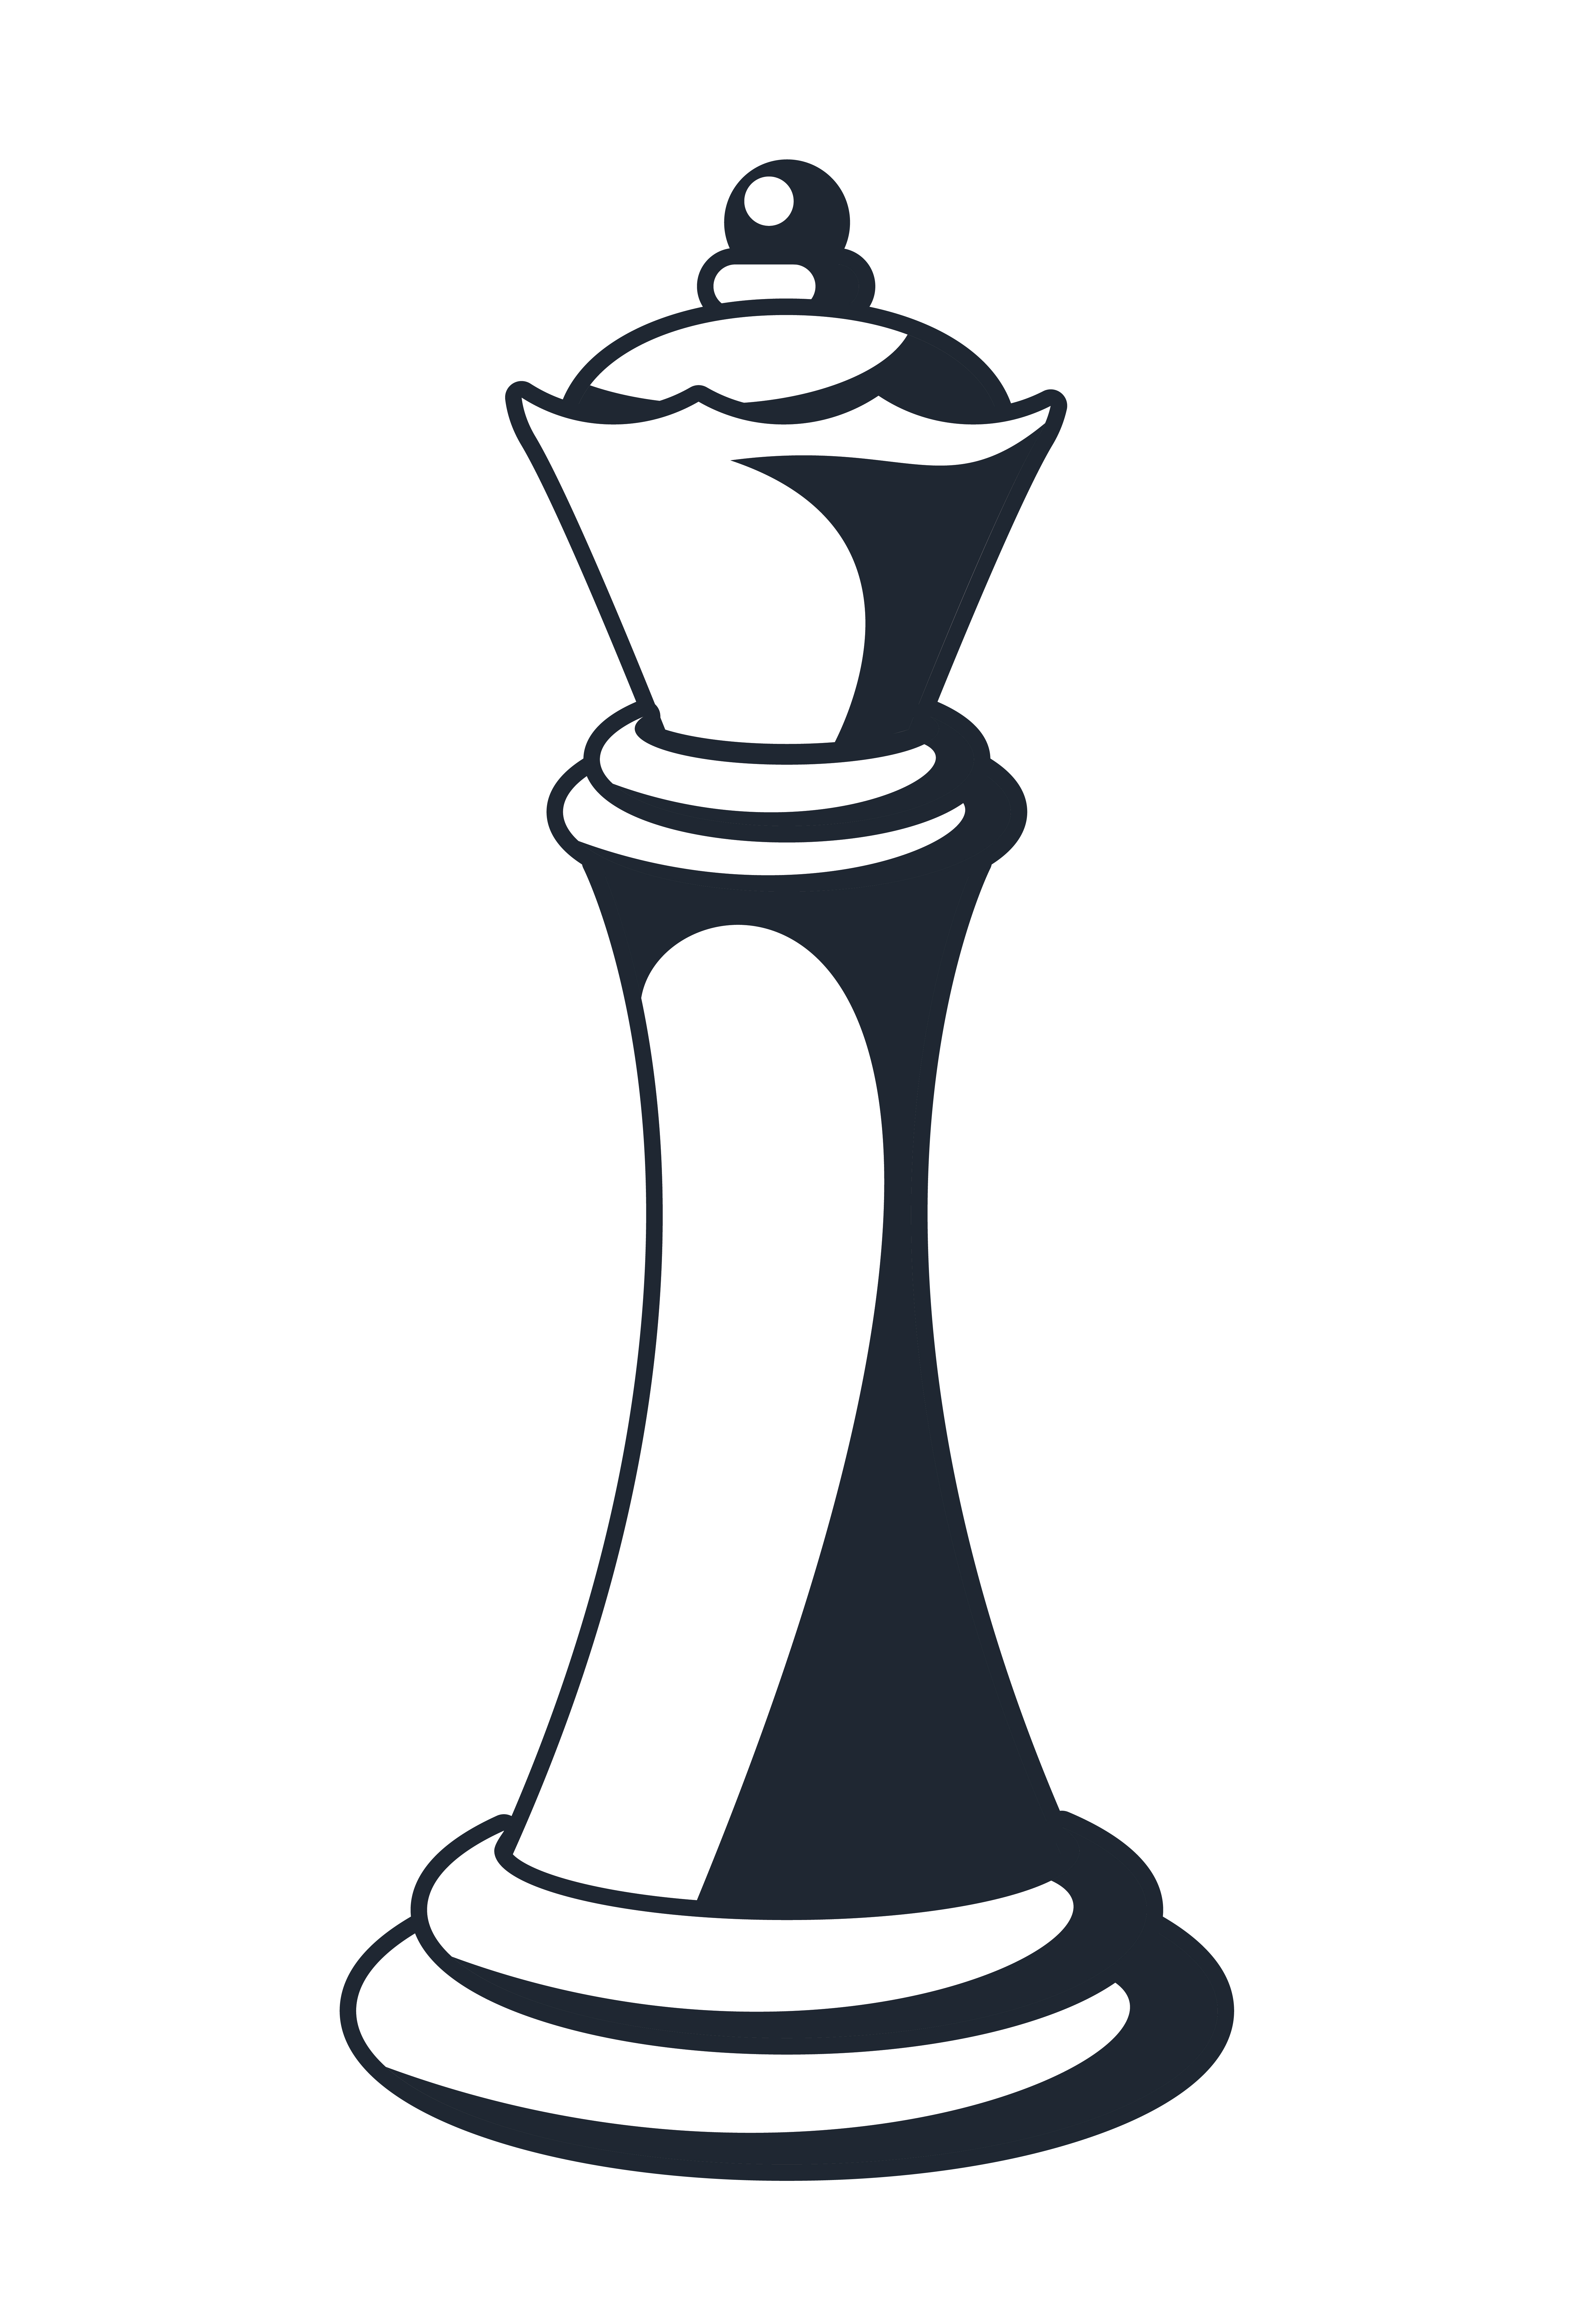 Peões de xadrez e rainha - ilustração - TemplateMonster